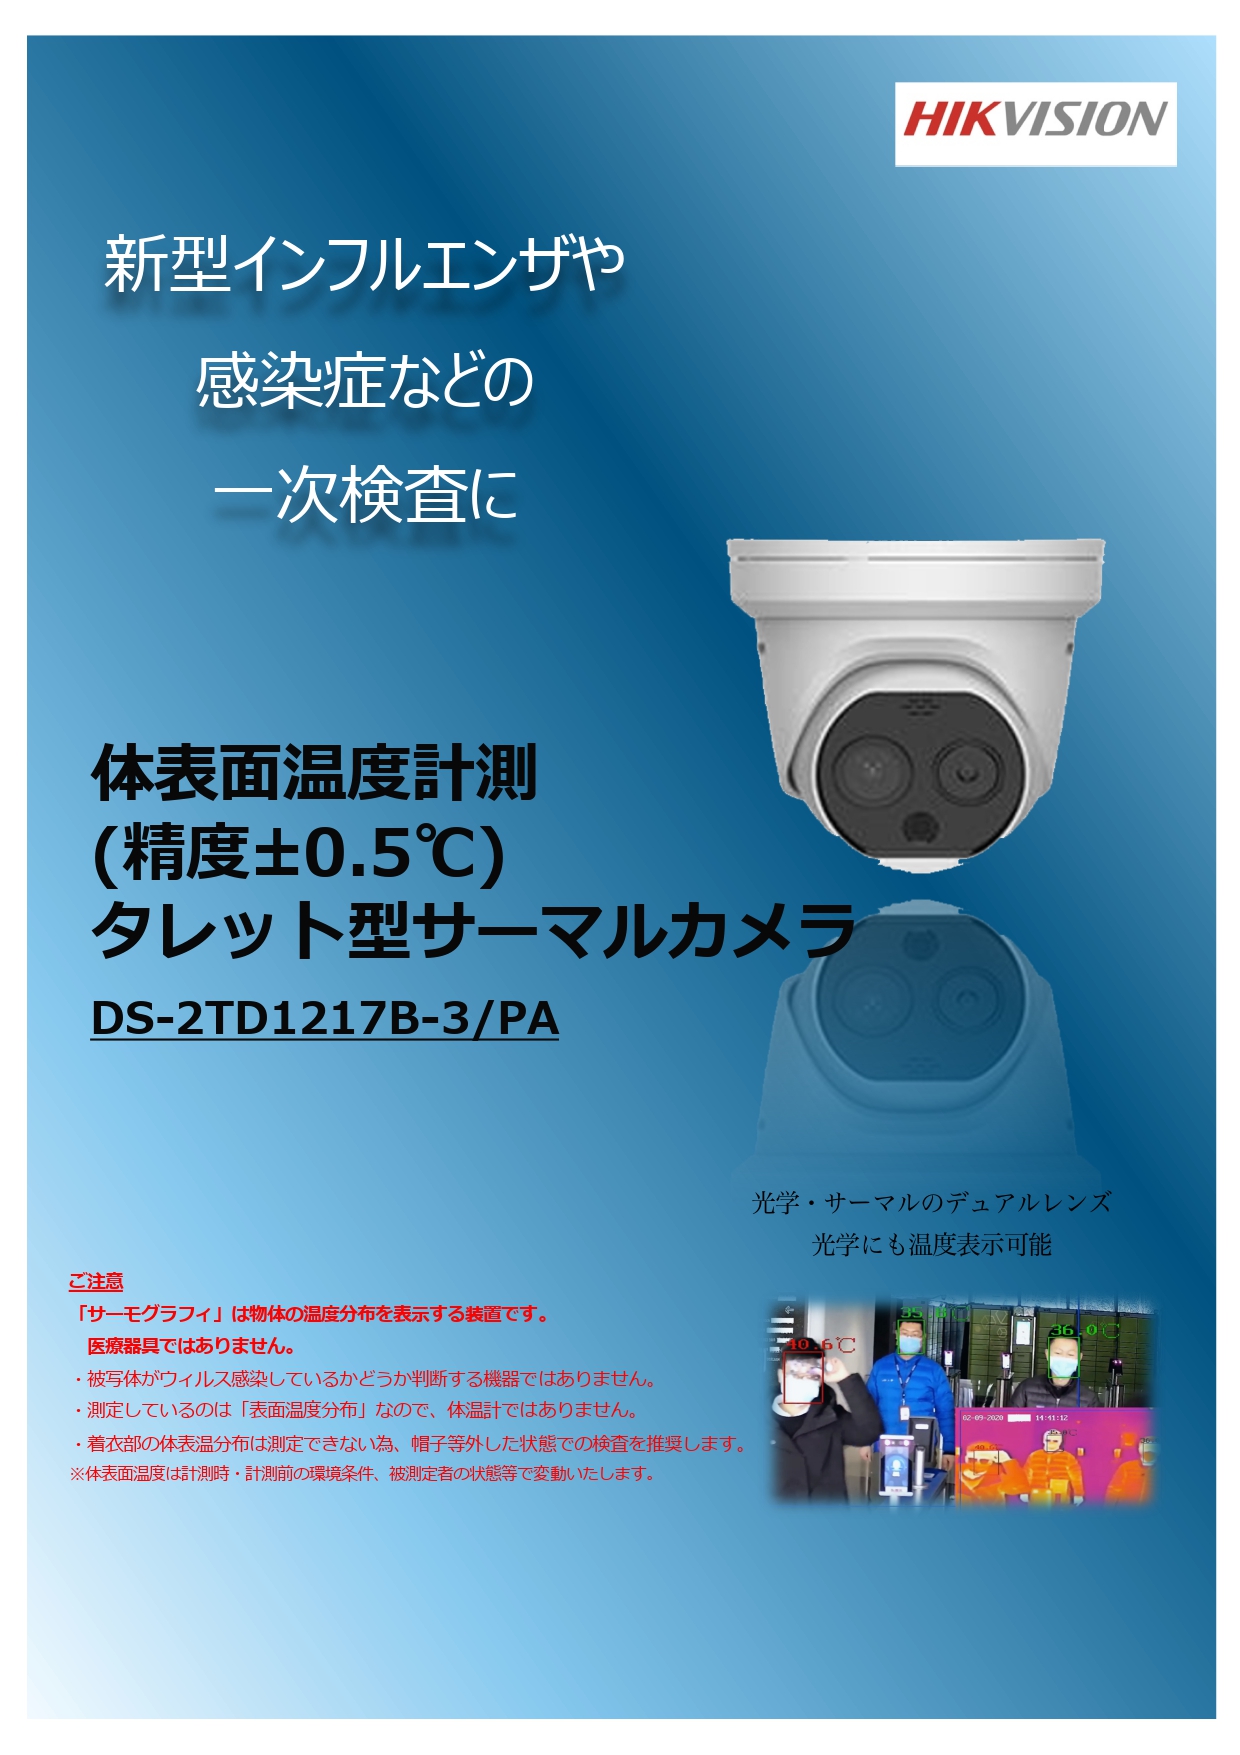 サーマルカメラ DS-2TD1217B-3/PA | 製品情報 | インテグラ株式会社